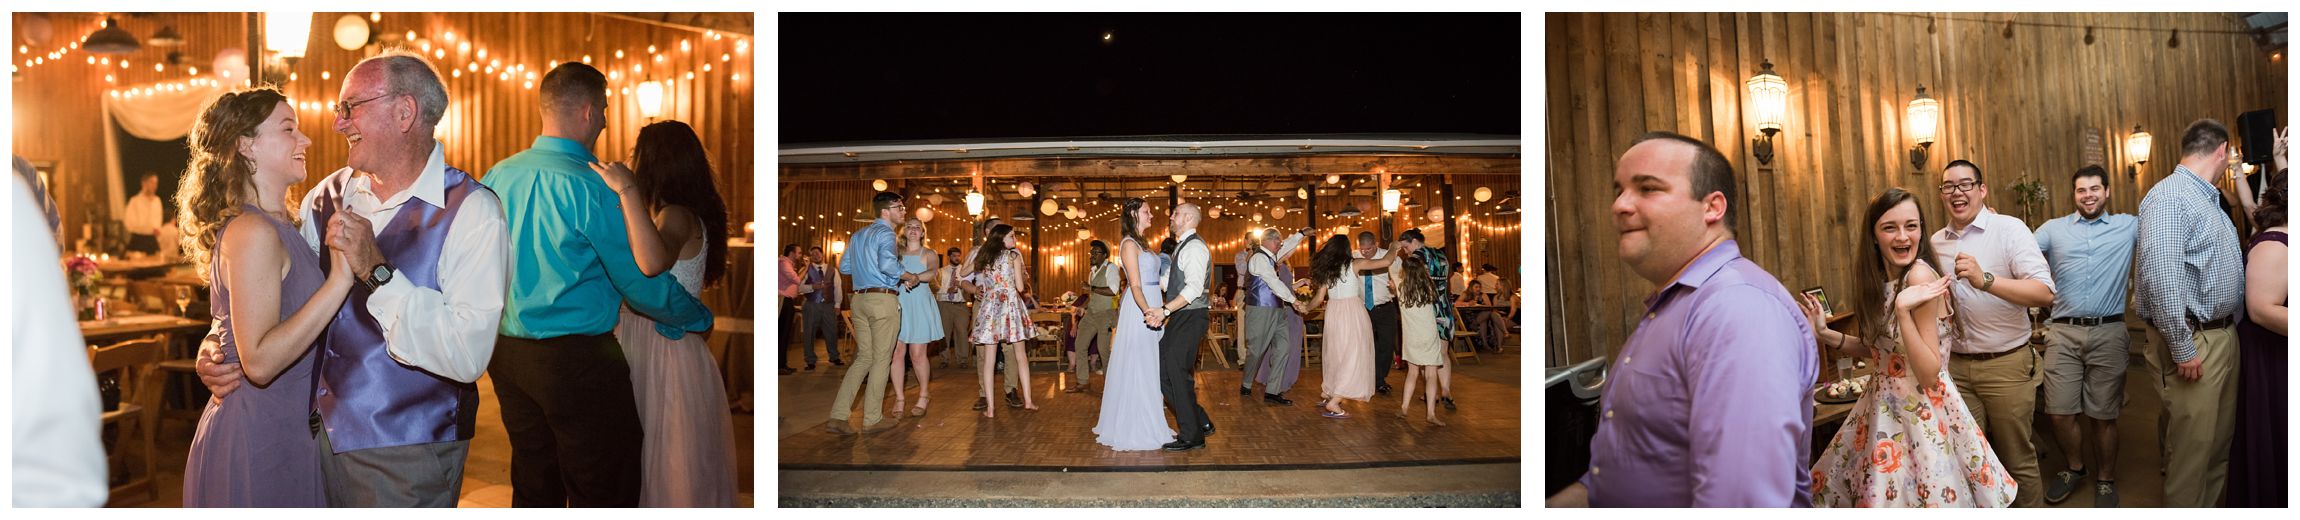 string lights illuminate barn wedding reception